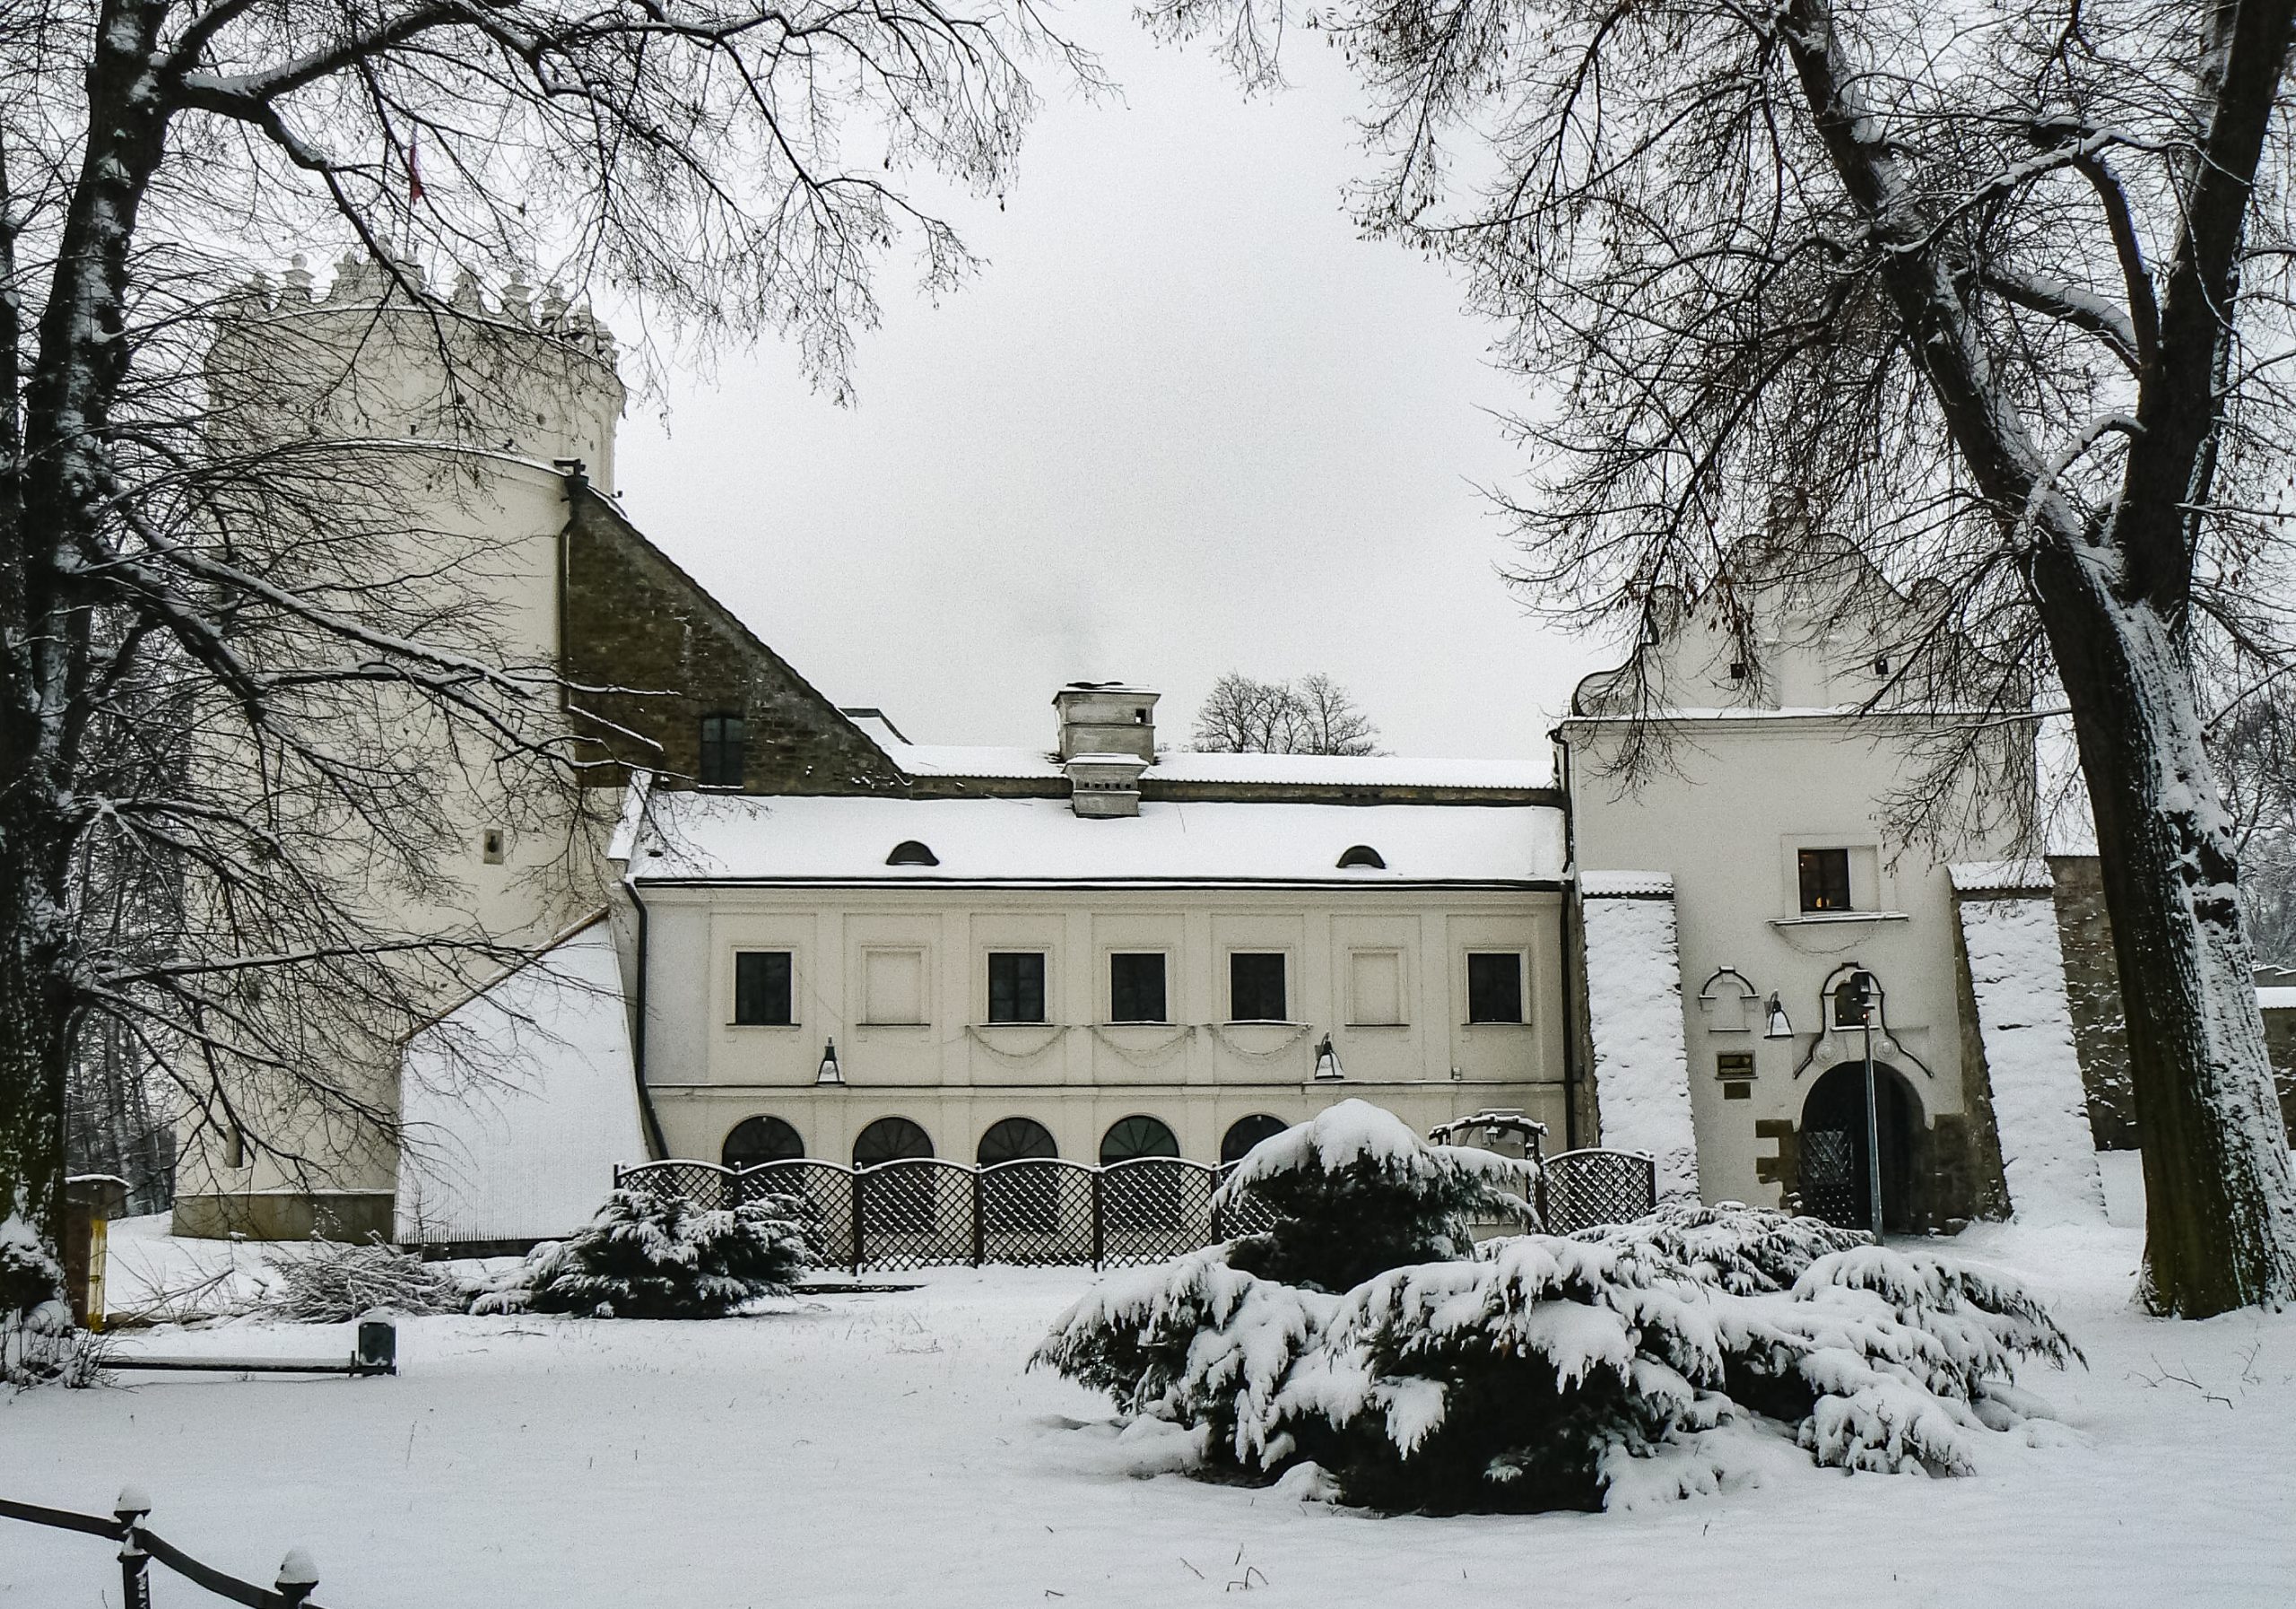 Zimowy krajobraz. Zamek z jedną wieżą i krużgankami na frontowej ścianie zewnętrznej.